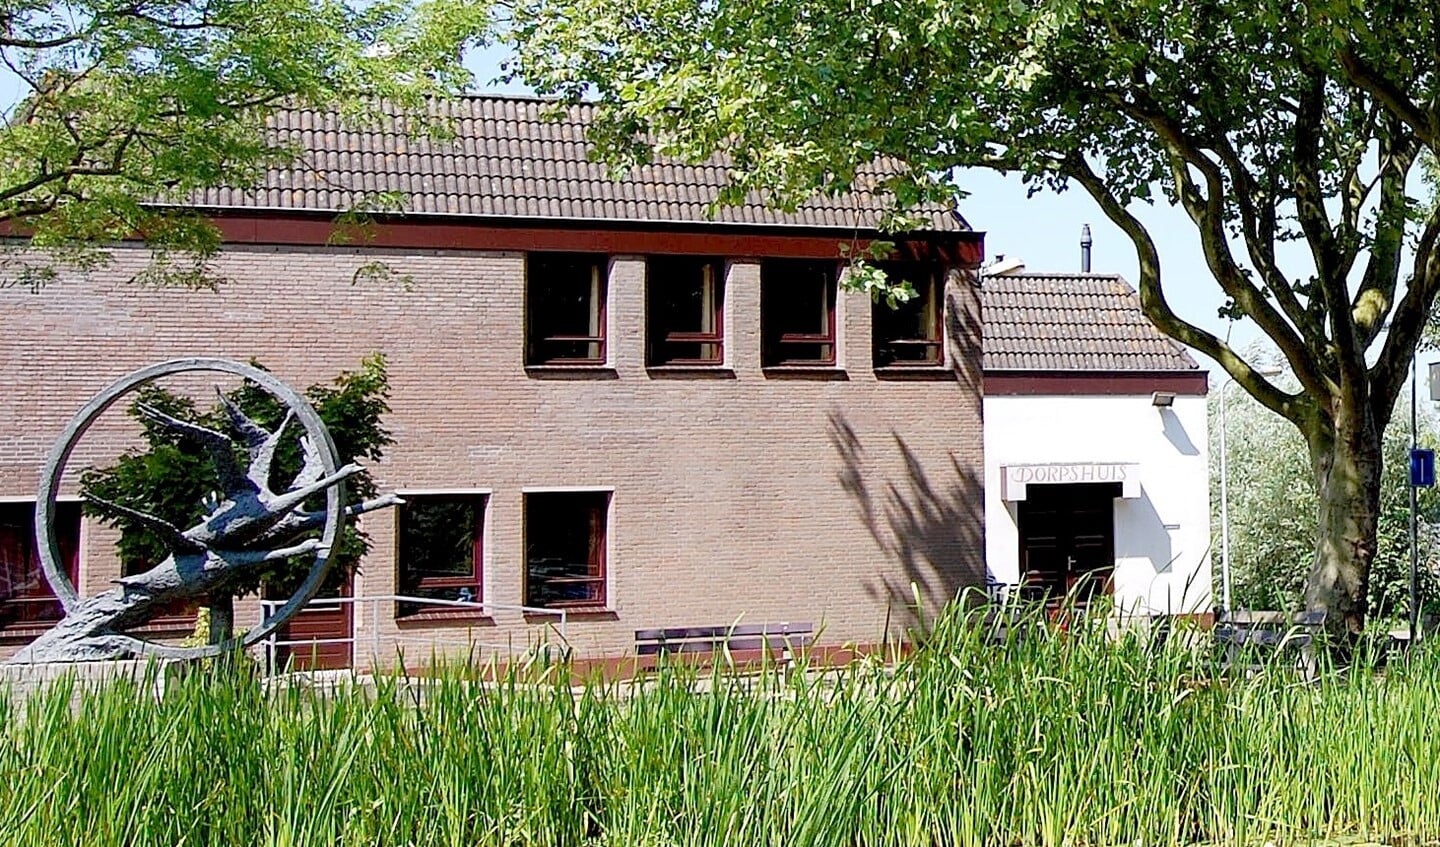 Het Dorpshuis aan de Zustersdijk wordt gesloopt voor woningbouw en misschien iets met een maatschappelijke functie (foto: Dick Janssen).